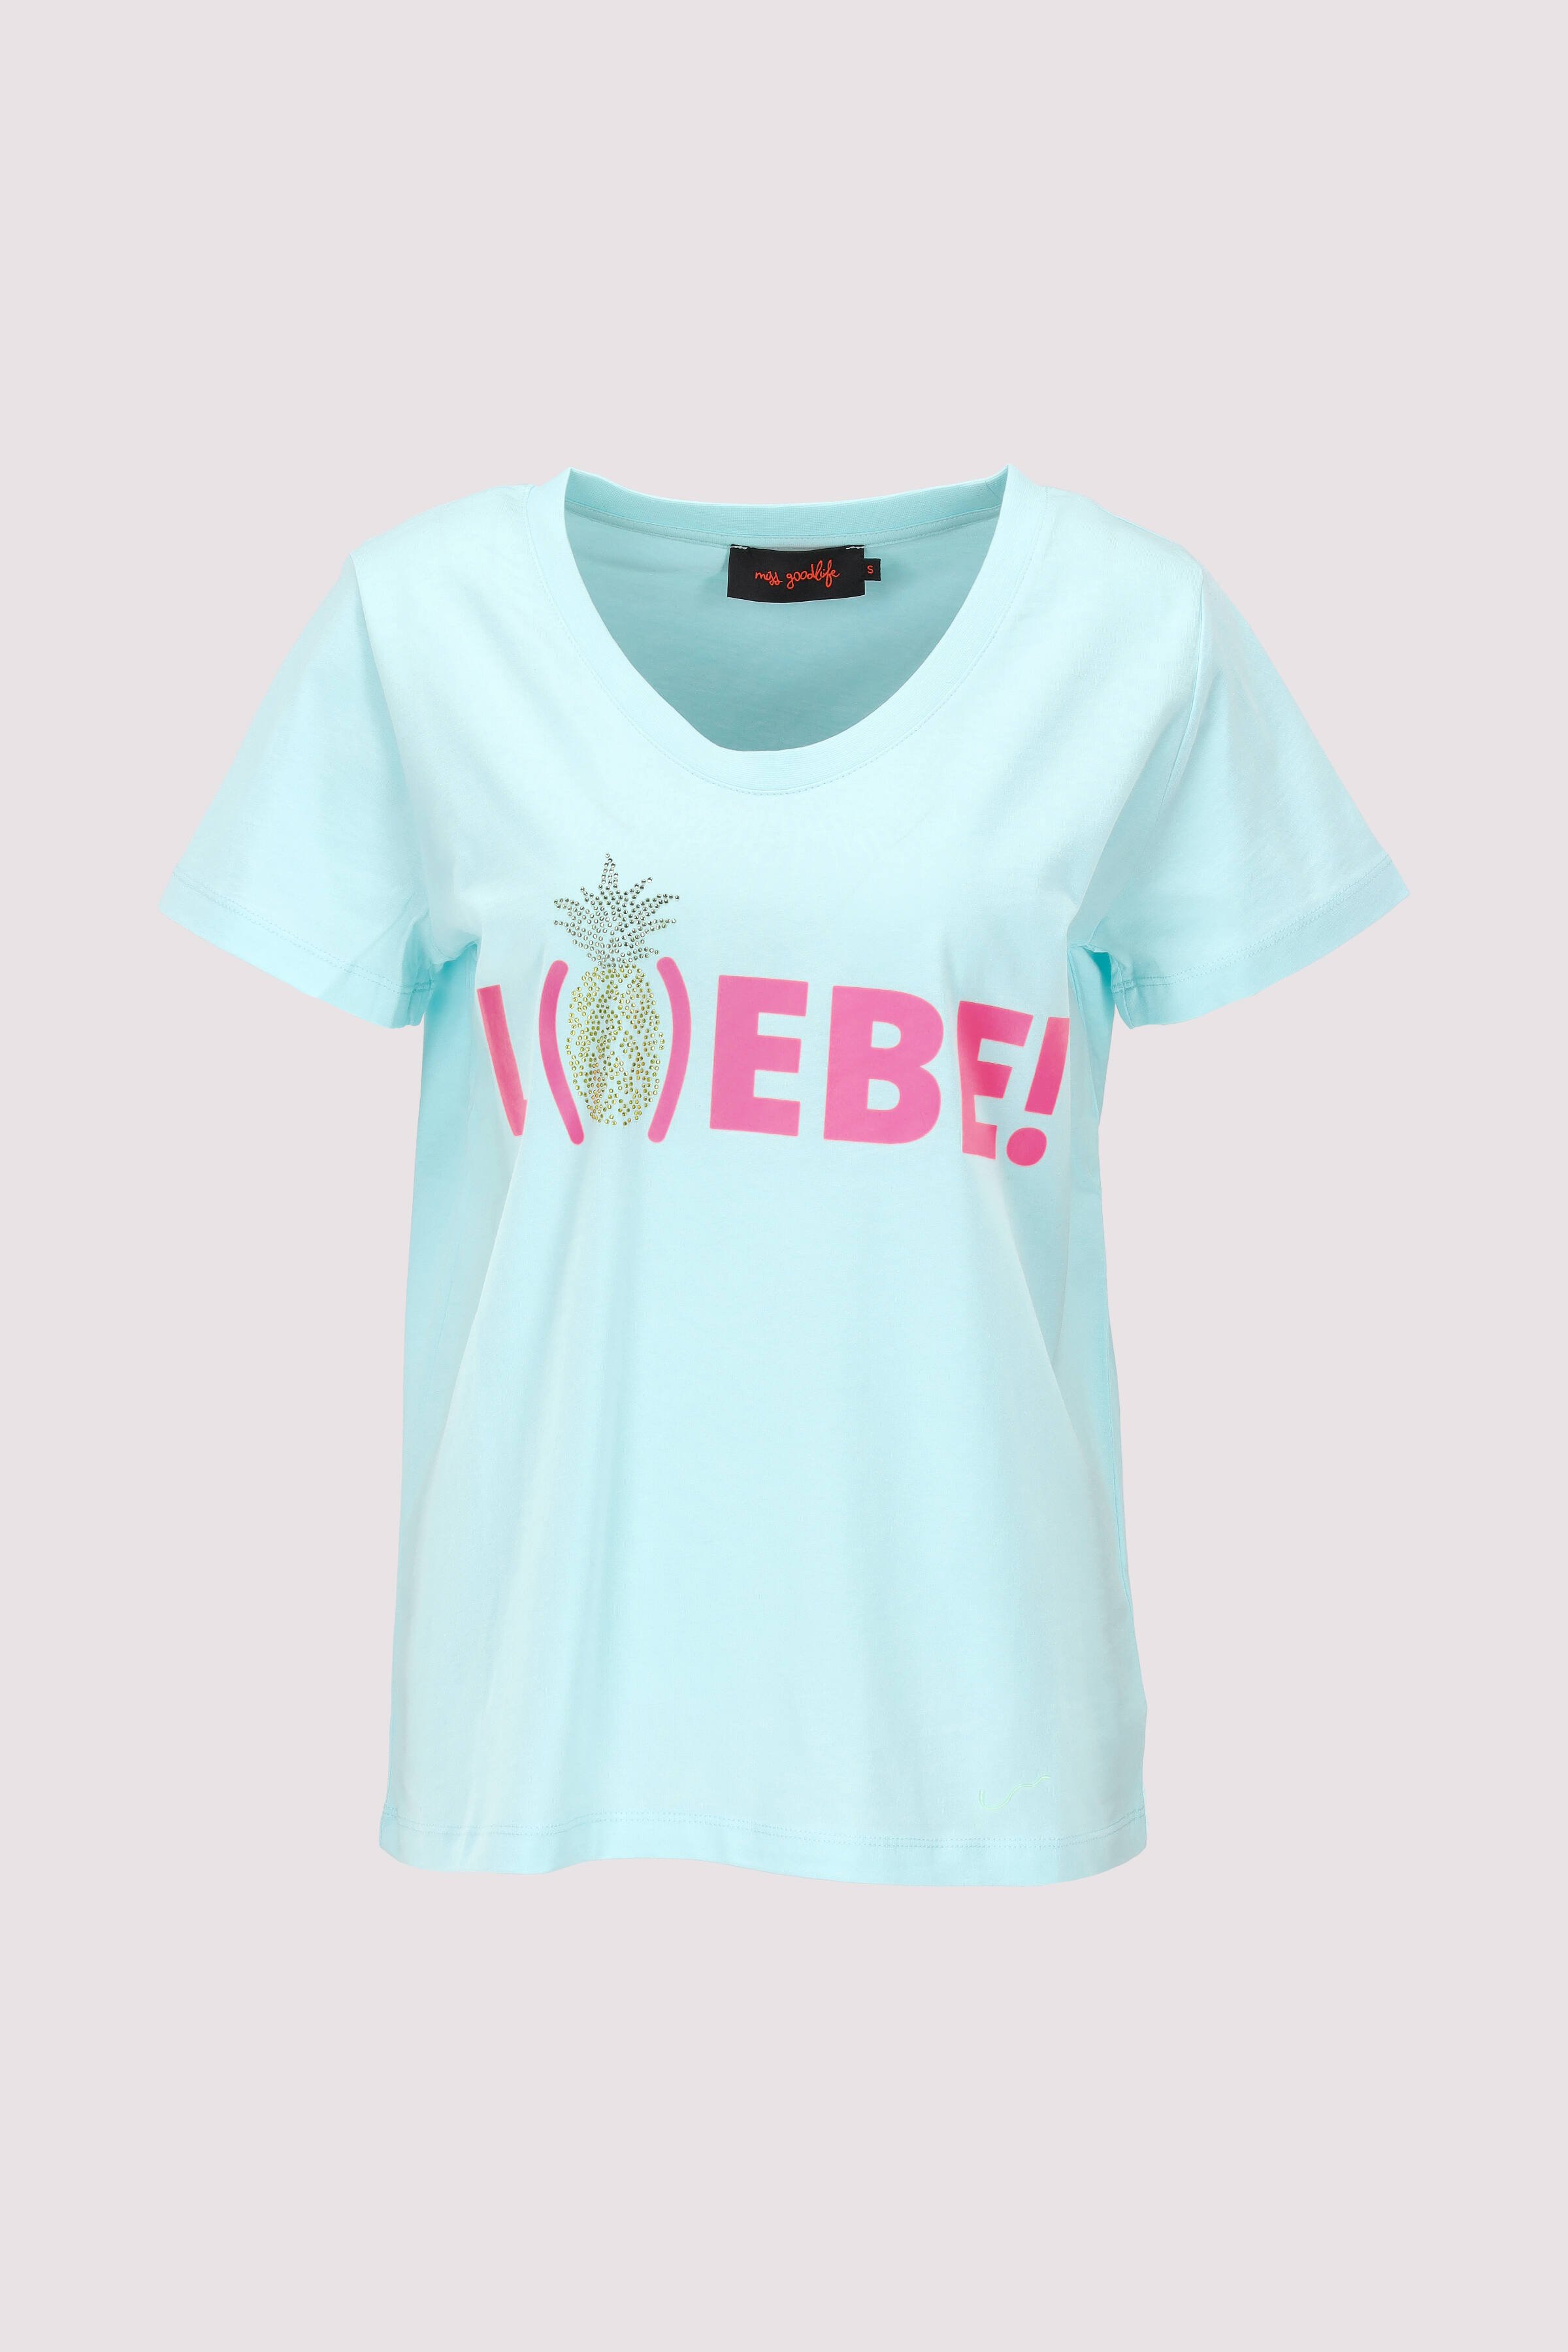 T-Shirt Liebe